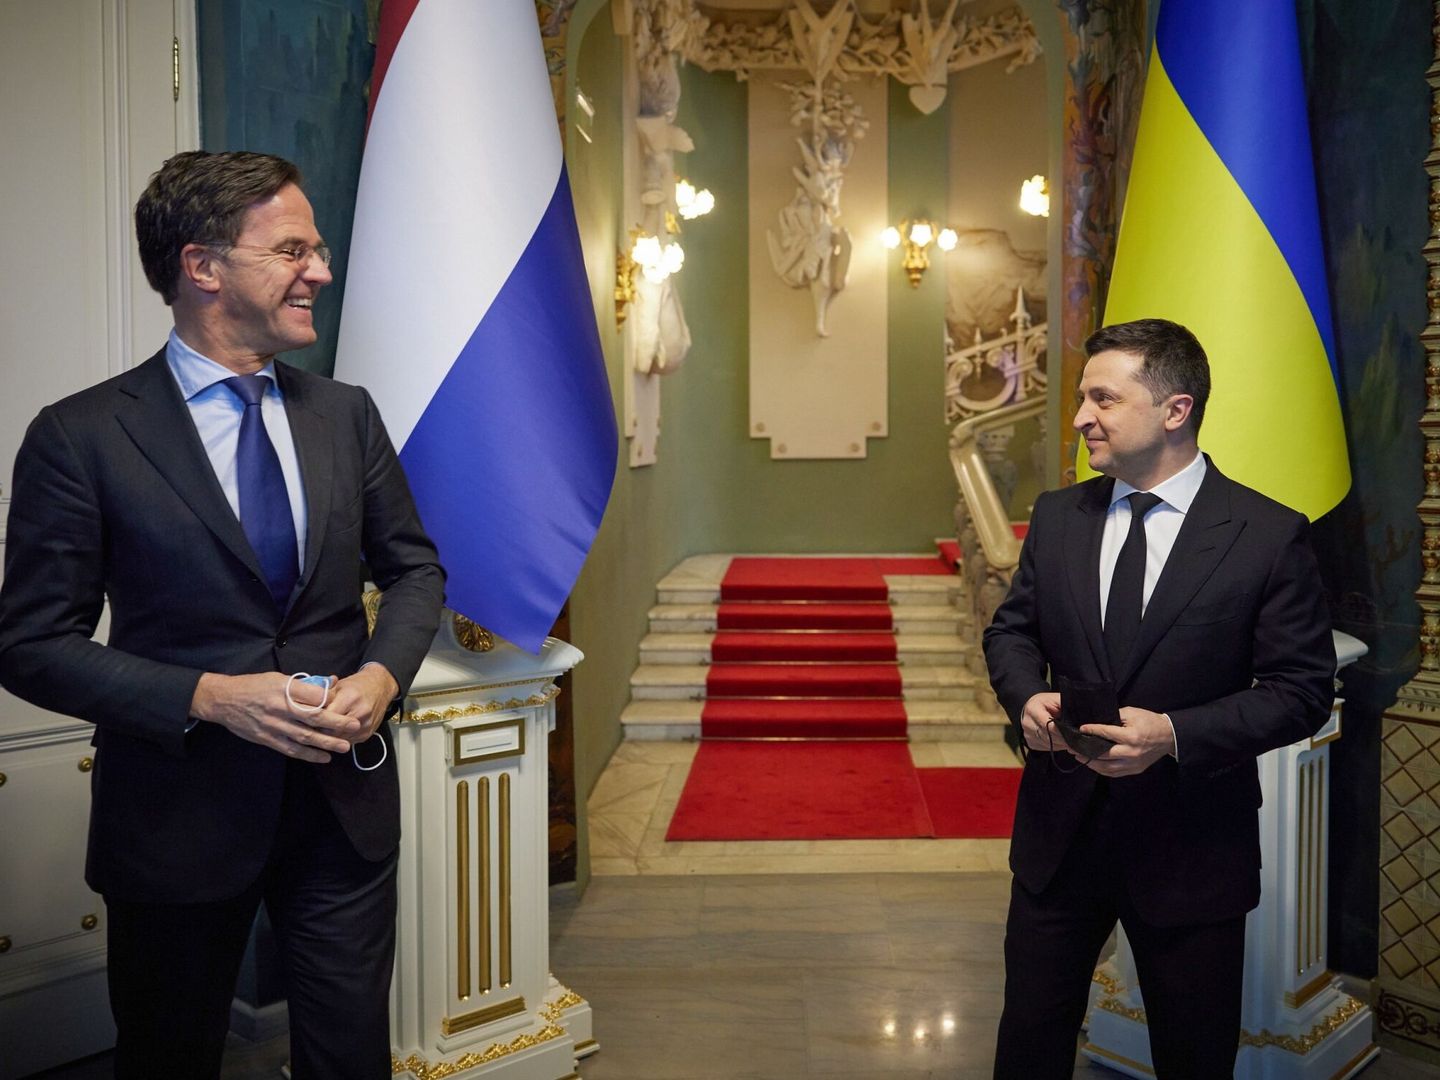 El primer ministro de los Países Bajos Mark Rutte (L) junto al presidente ucraniano Volodímir Zelenski (R) en una reunión en febrero de este año. (EFE/ Presidential Press Service)